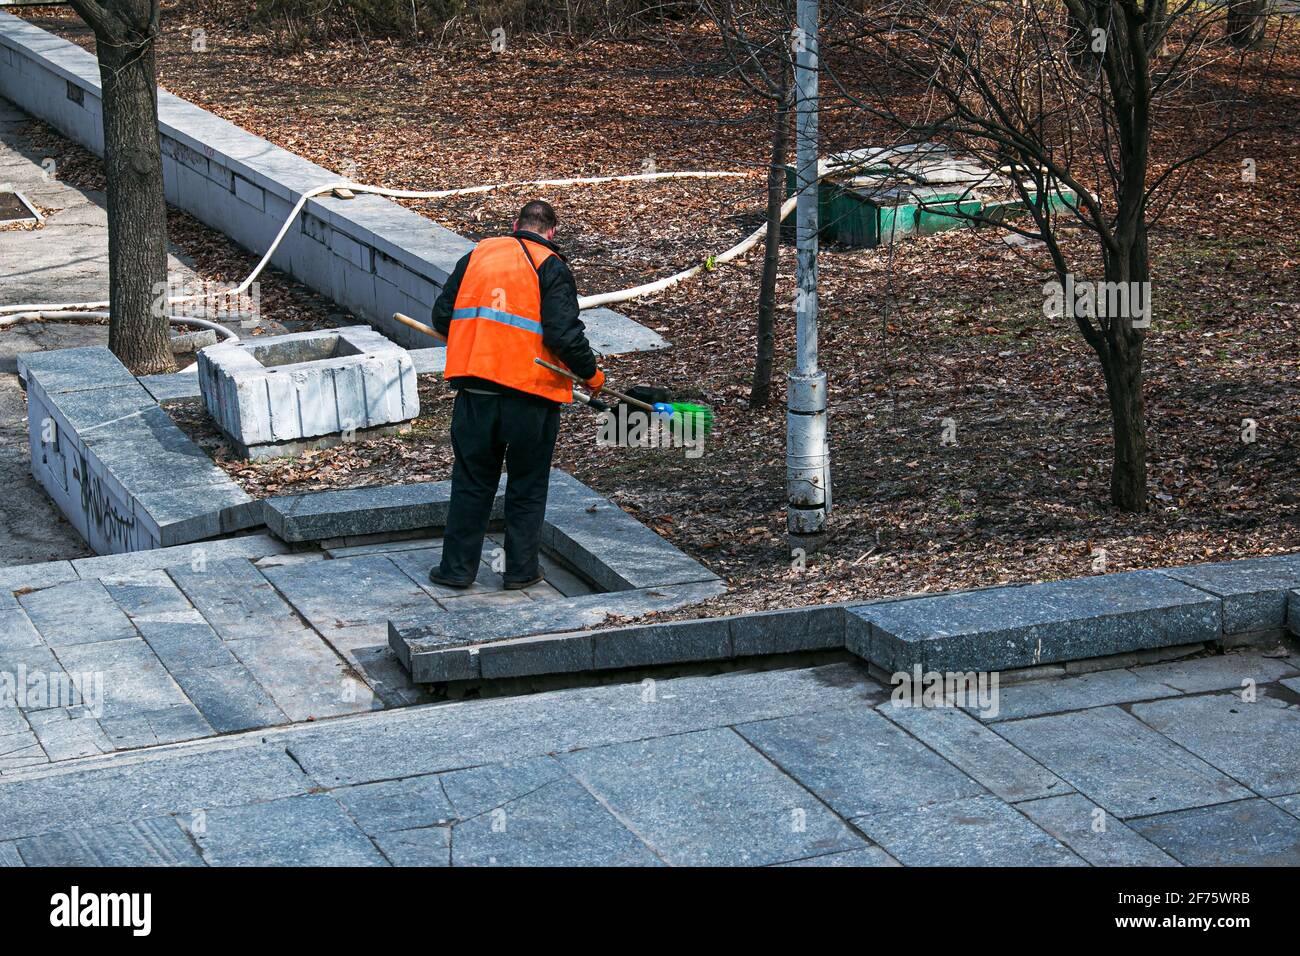 Dnepropetrovsk, Ucraina - 03.16.2021: I servizi municipali stanno pulendo la città dopo l'inverno. Un lavoratore spazza una scala di granito in un parco da ultimo y Foto Stock